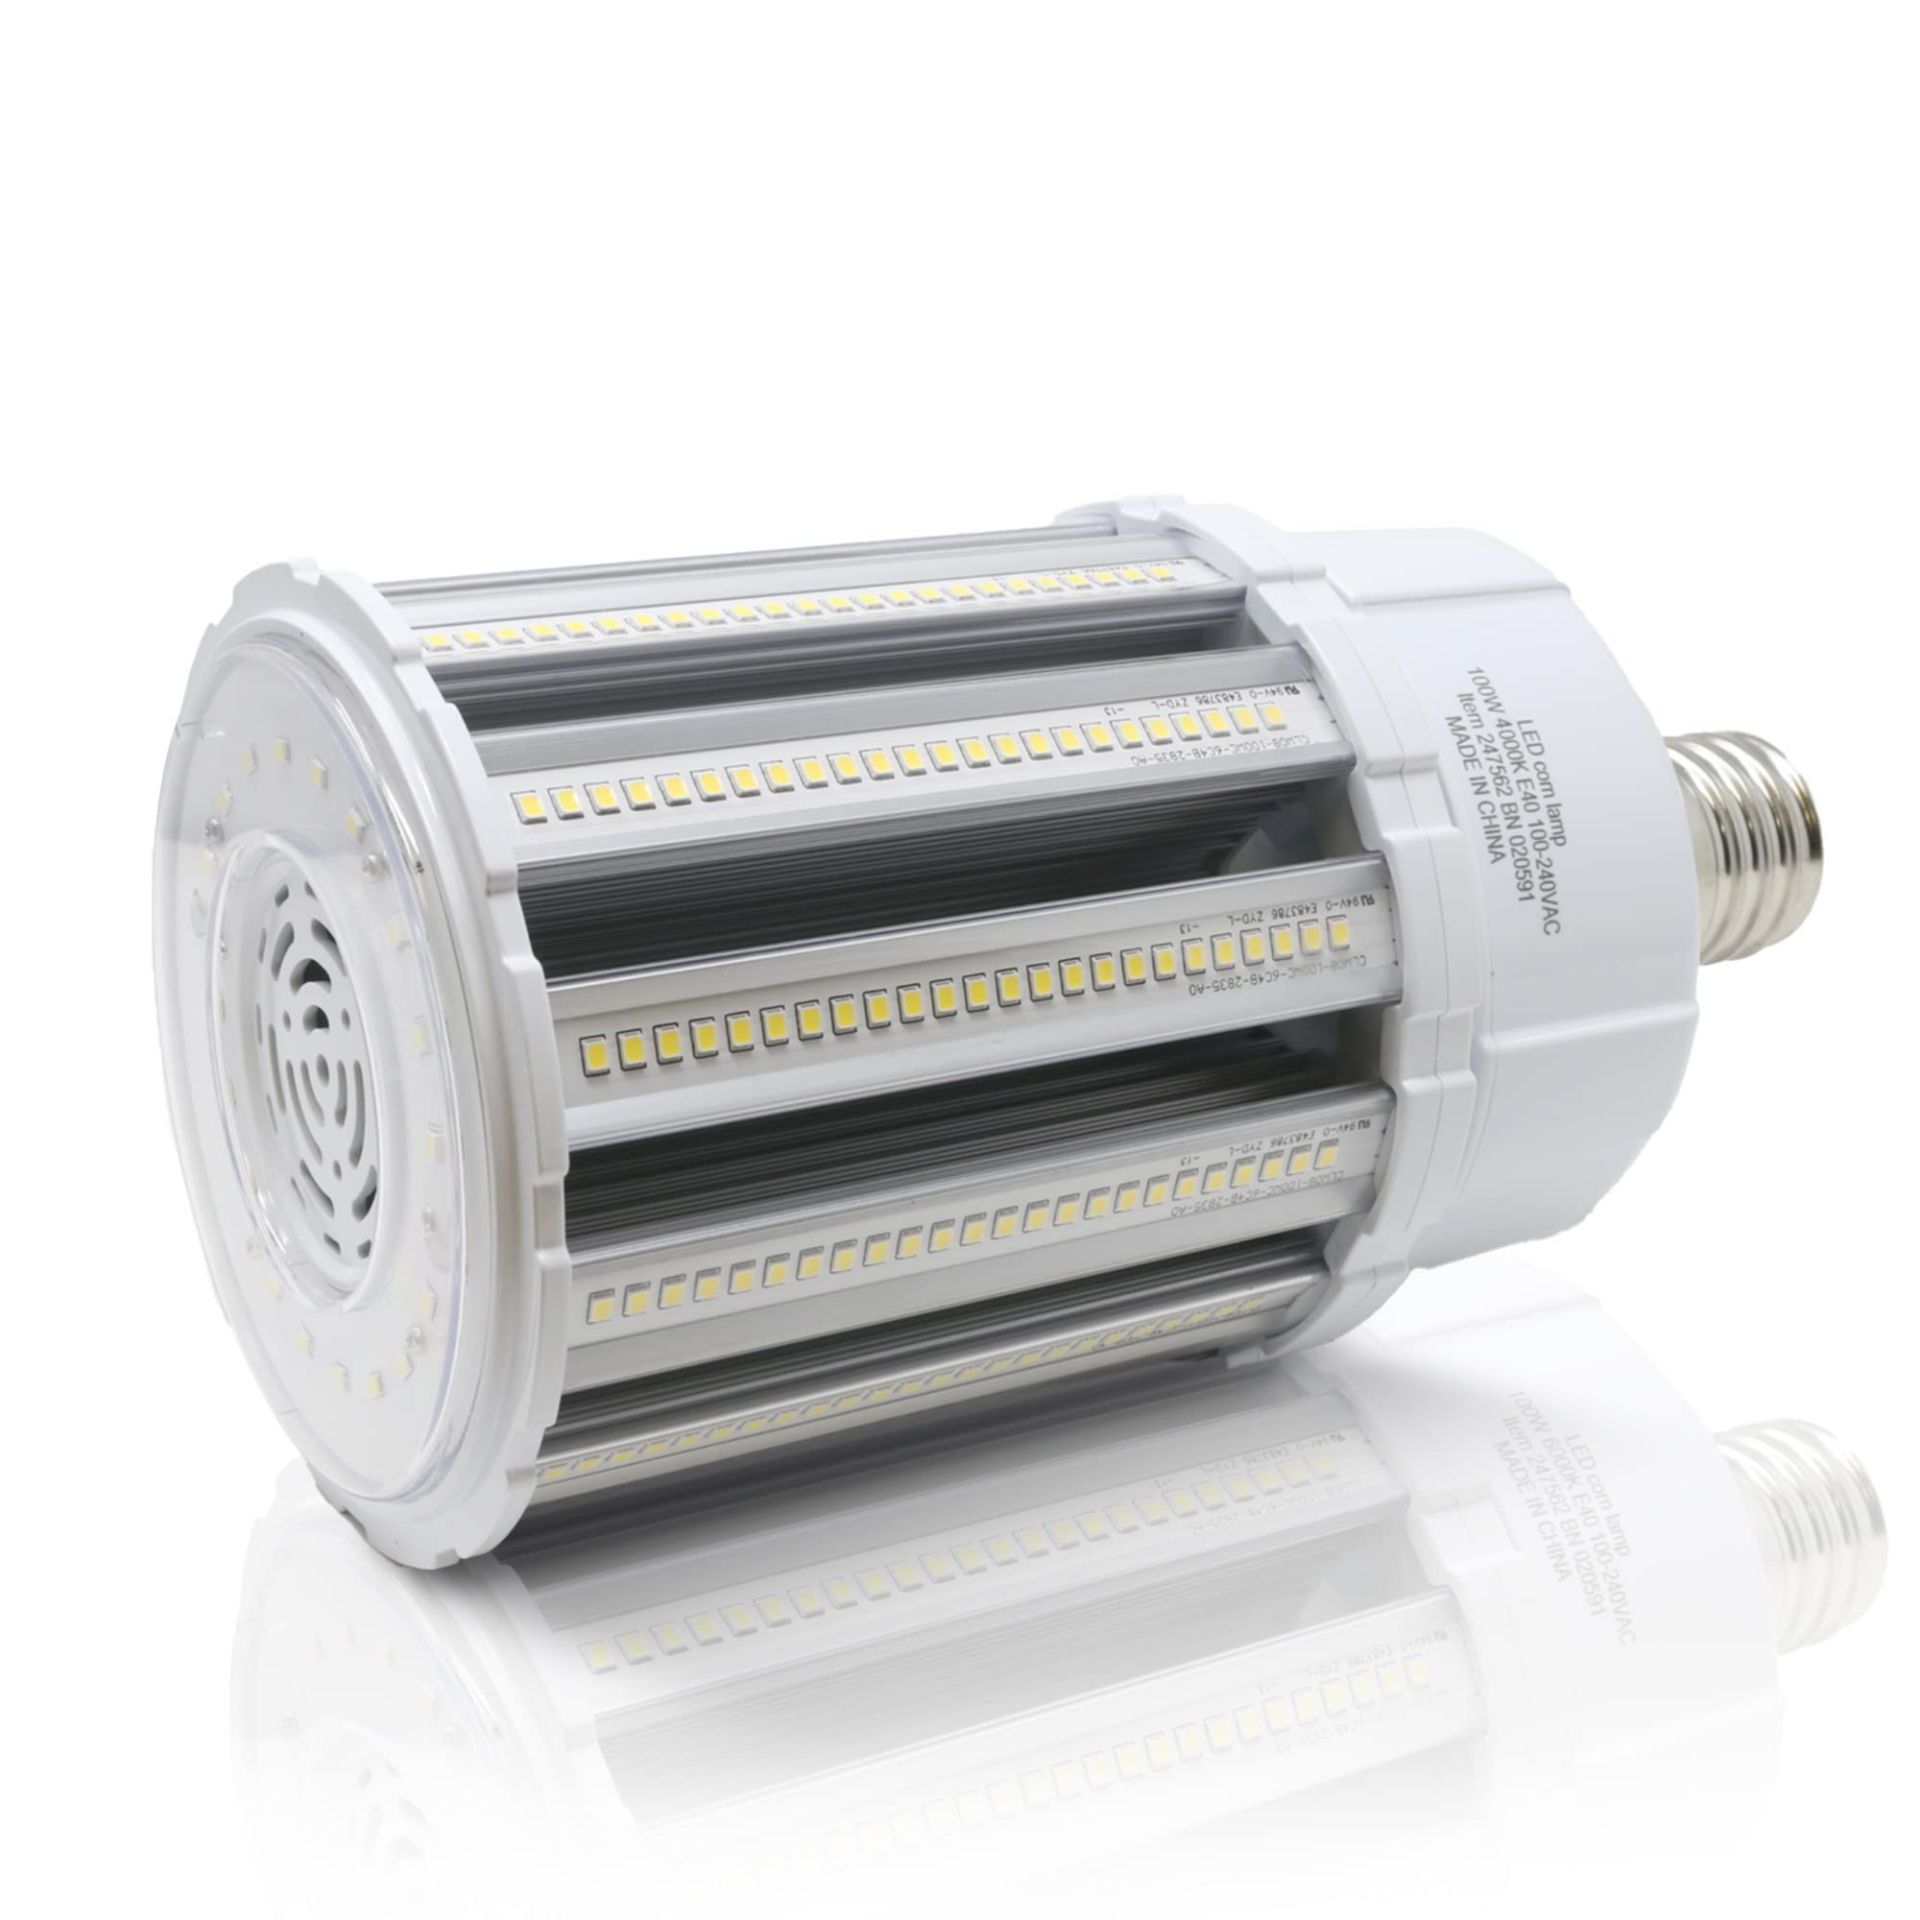 RRP £49.99 Bright Source 100w E40 LED Corn Light Bulb 4000k Cool White (14